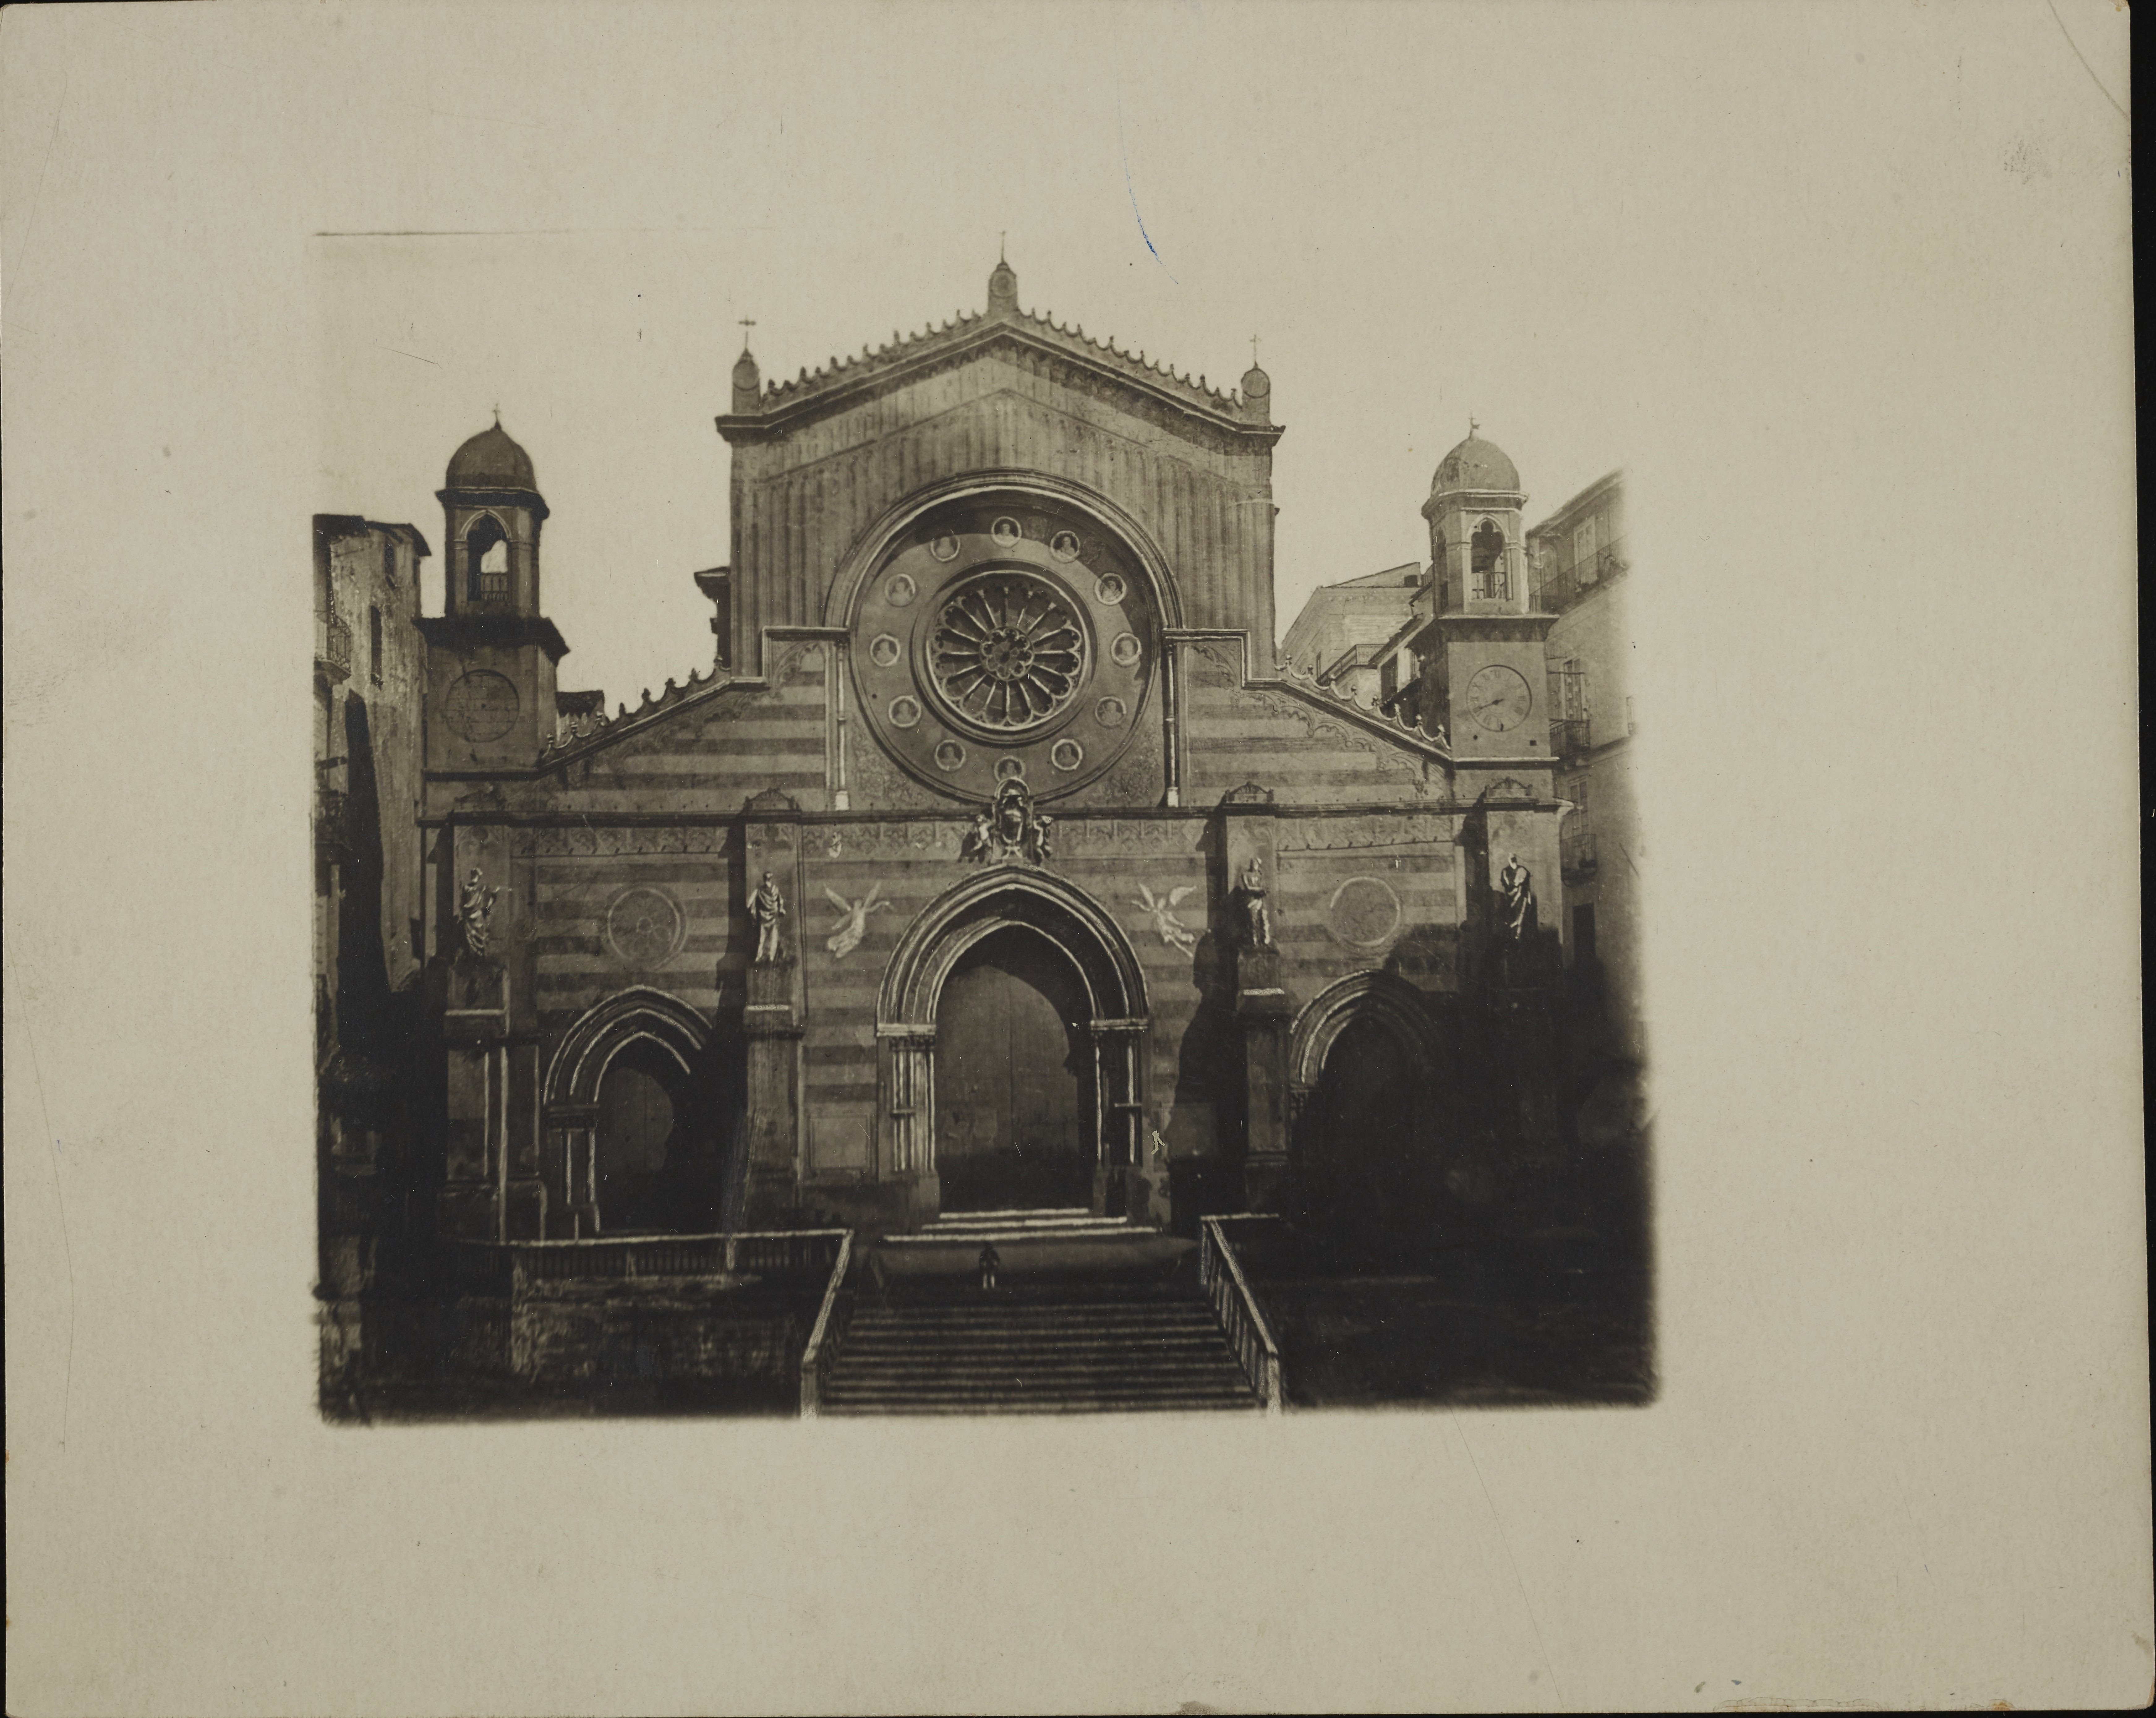 Valente, Concetto, Cosenza - Cattedrale di S. Maria Assunta, facciata, 1901-1925, gelatina ai sali d'argento, MPI6053017